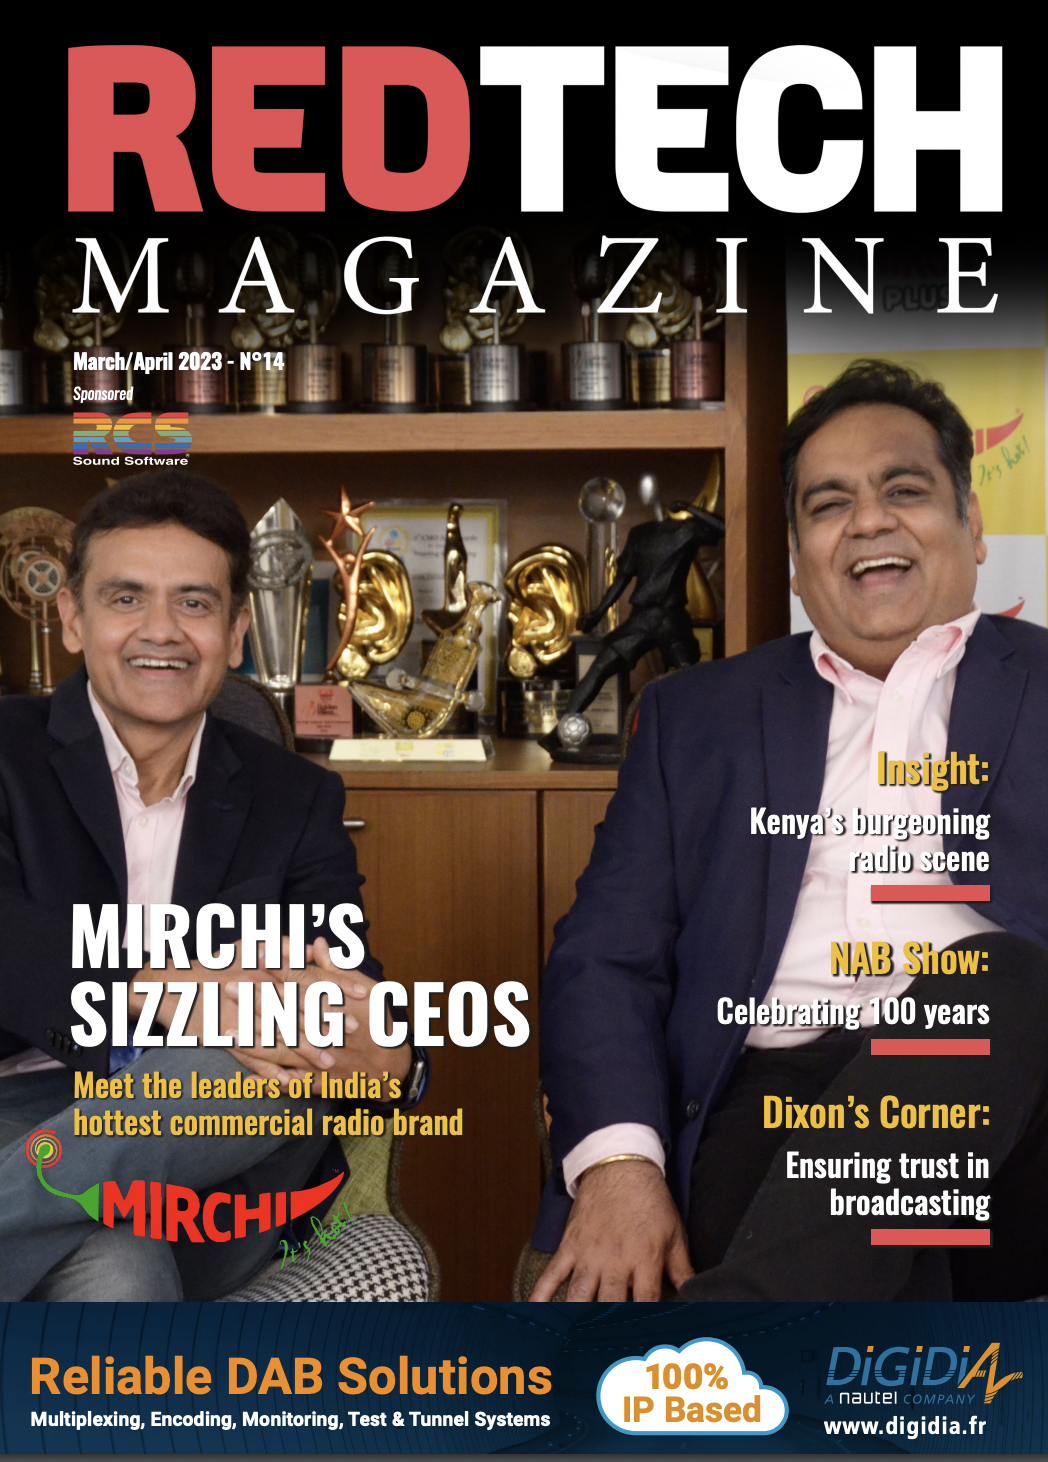 Le nouveau numéro de RedTech Magazine est disponible